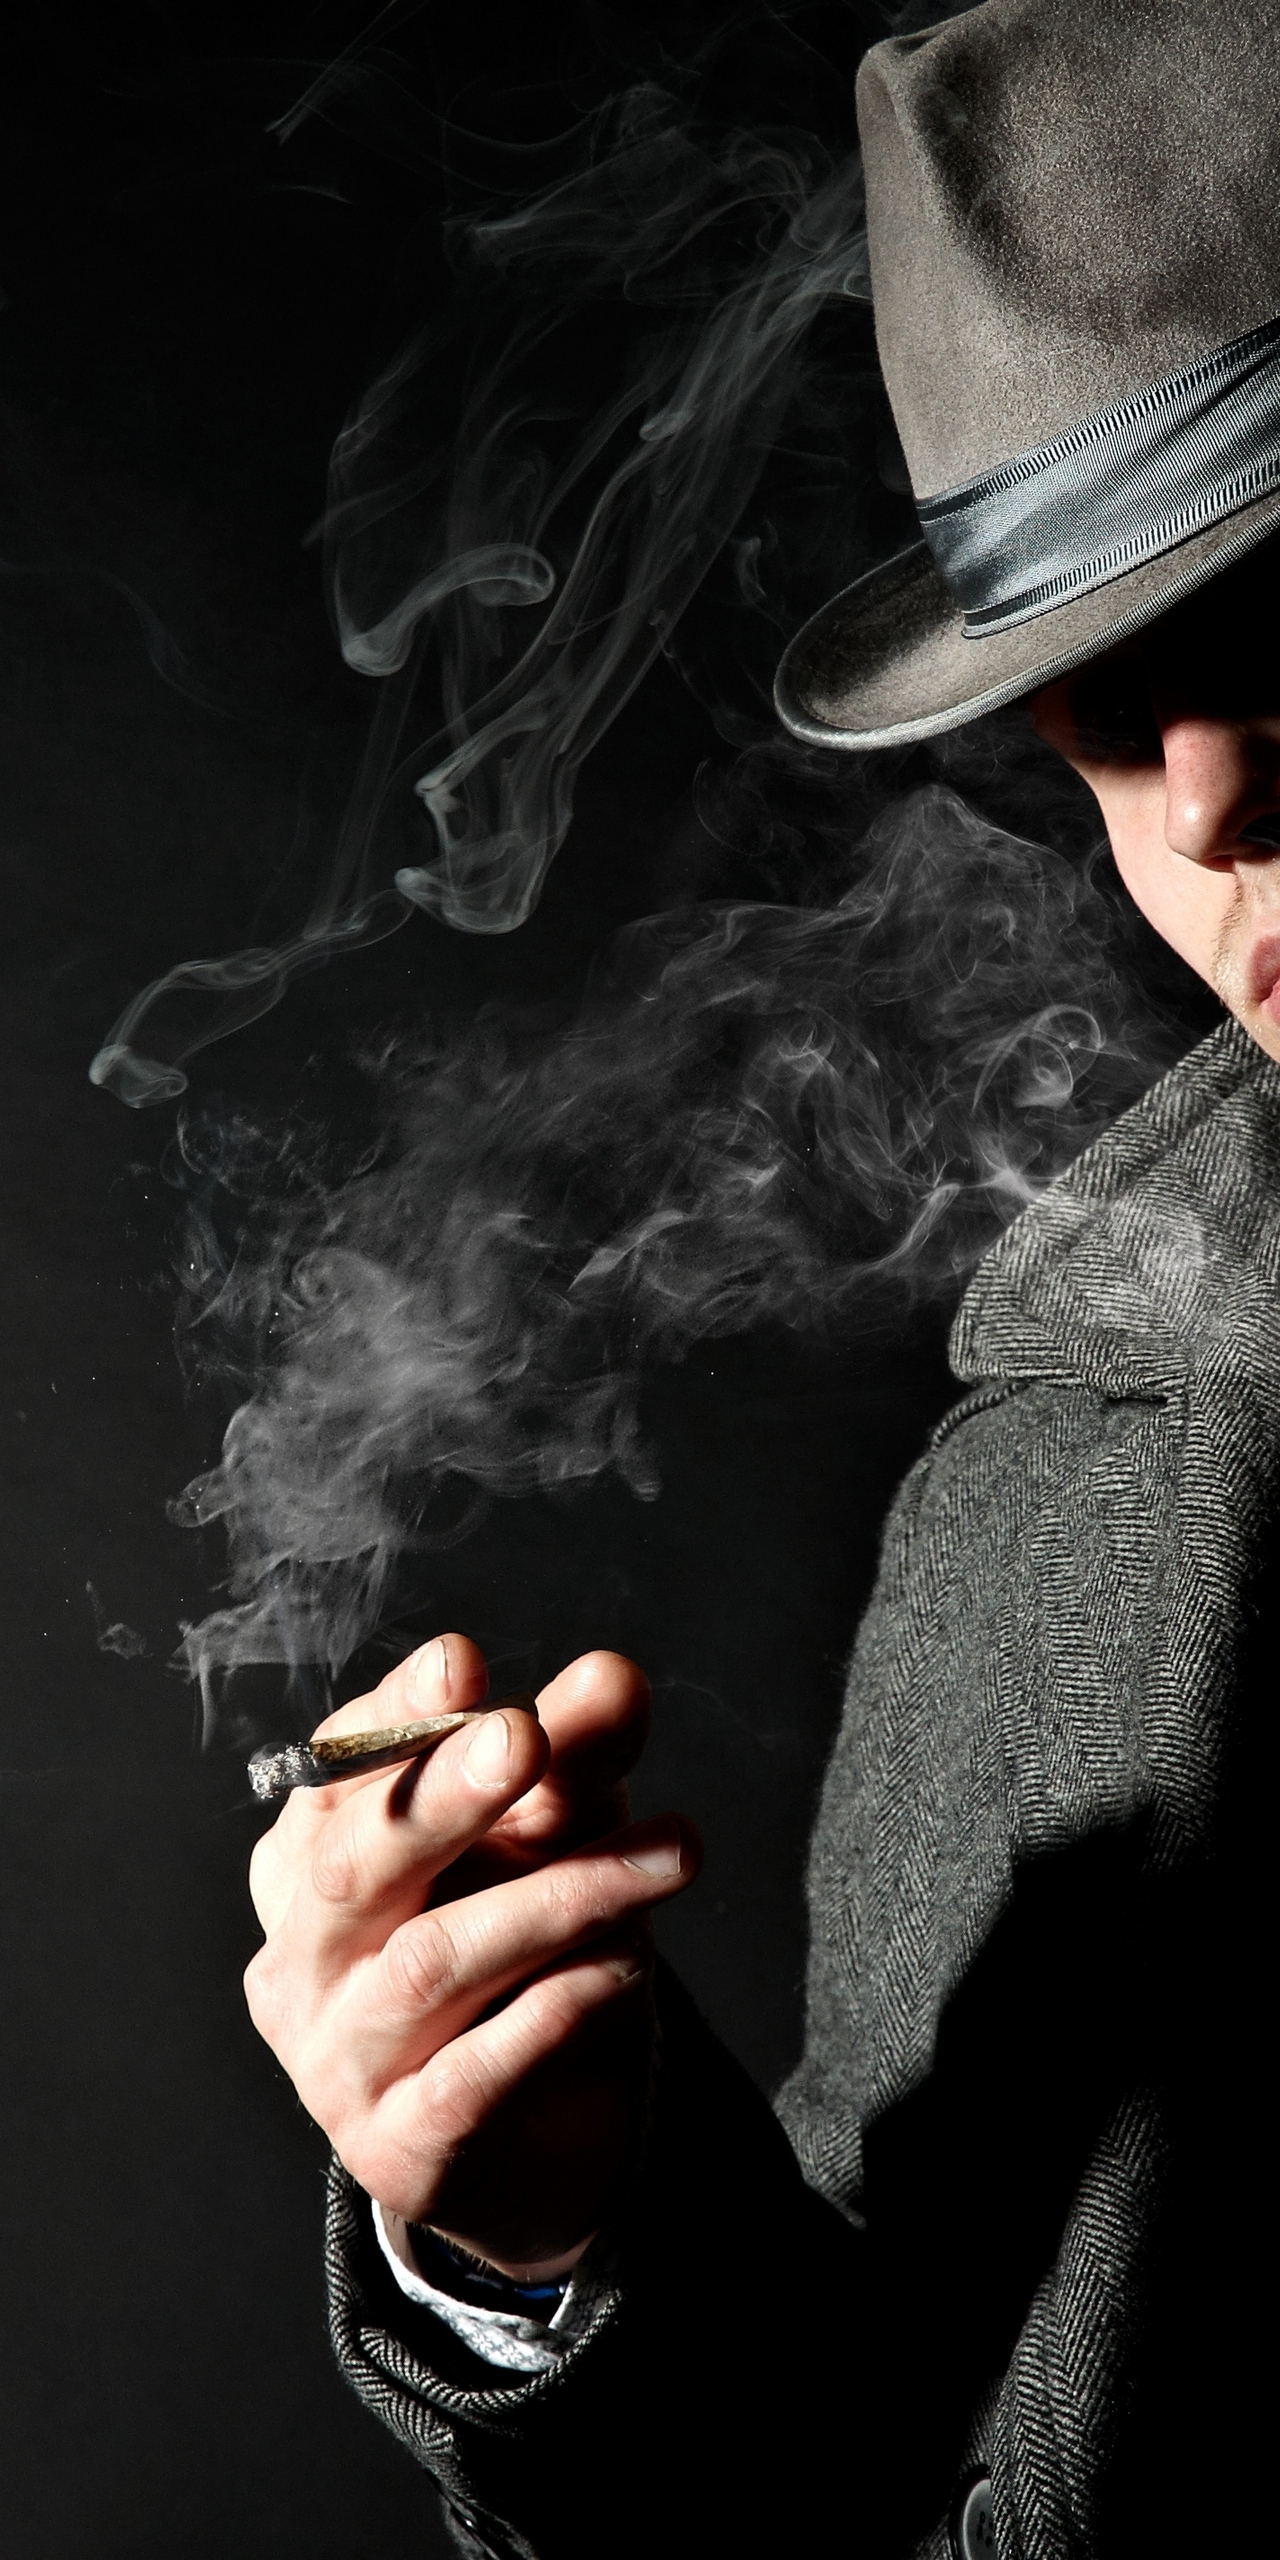 Картинка: Мужчина, пальто, галстук, шляпа, курит, сигара, дым